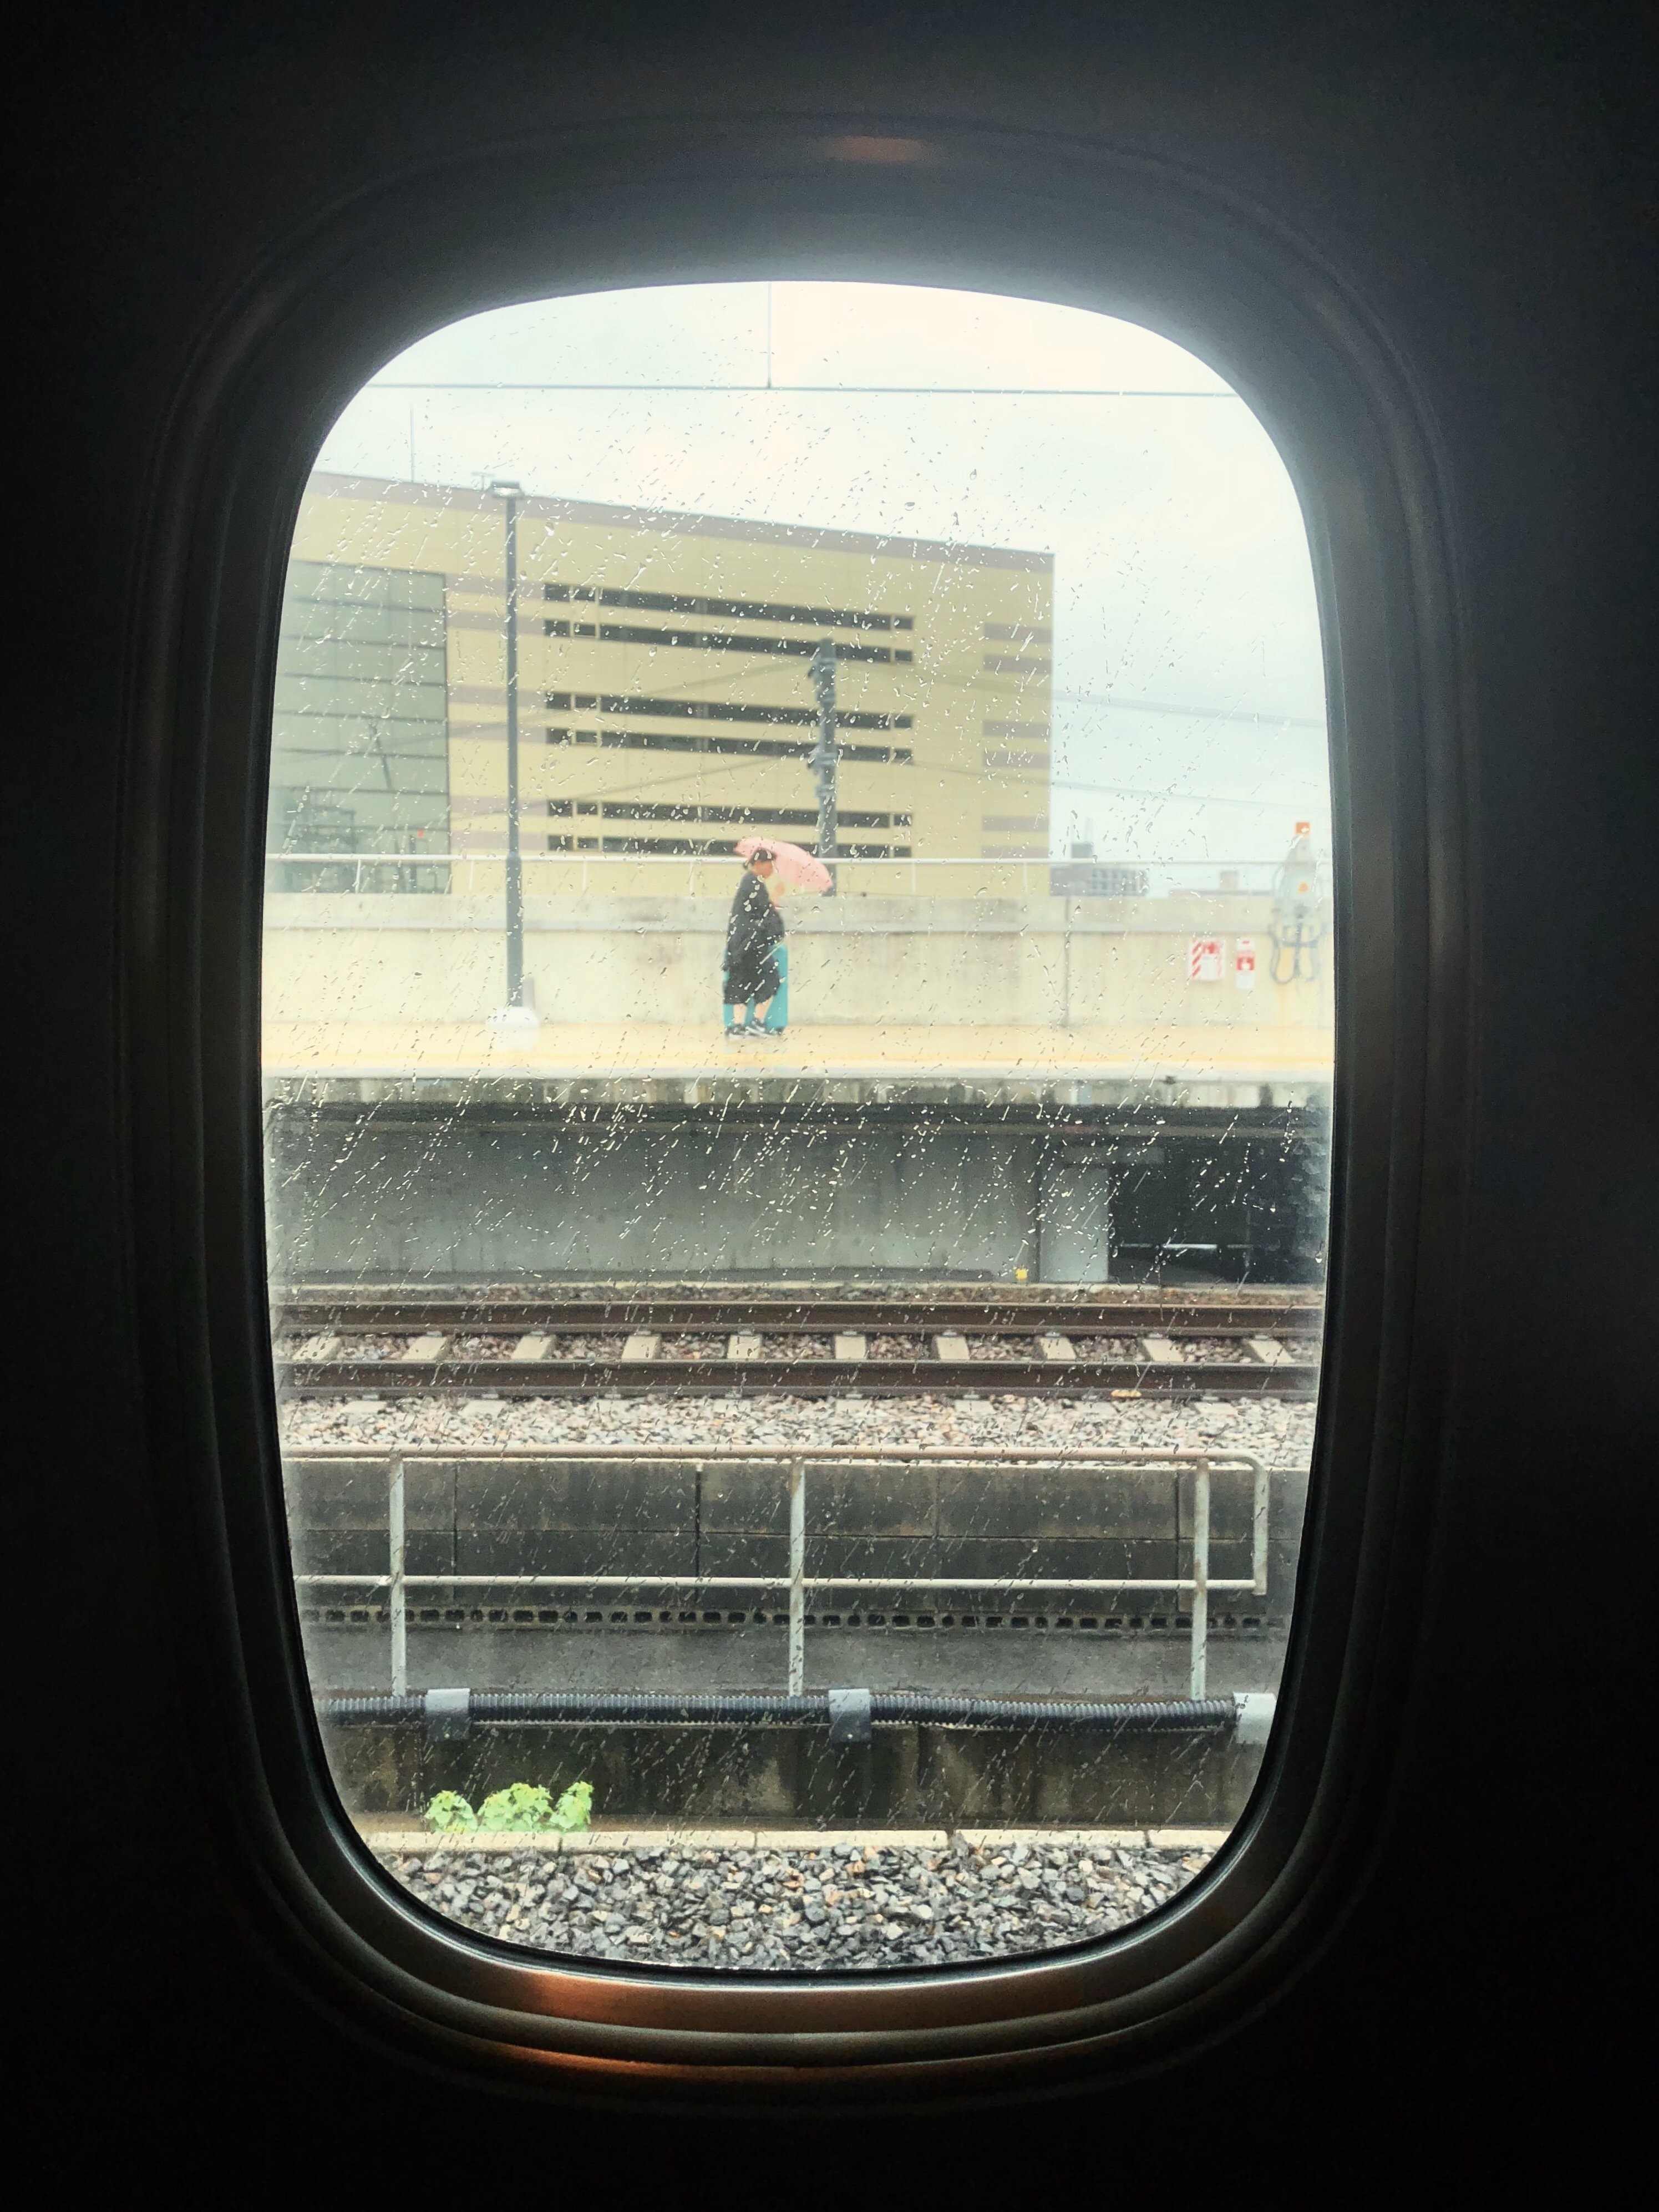 Ver a través de la ventana de un tren en la foto de lluvia